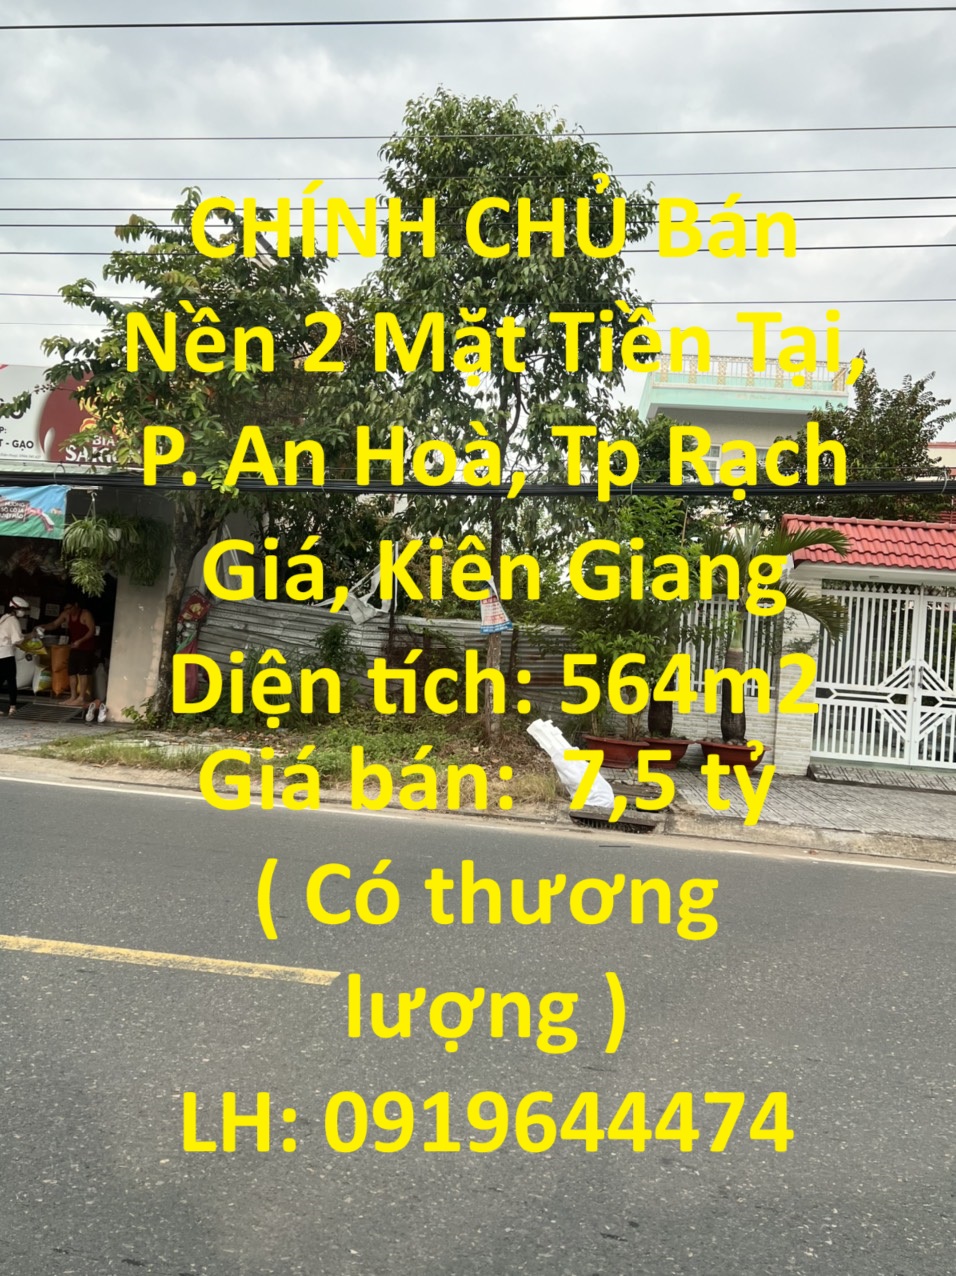 CHÍNH CHỦ Bán Nền 2 Mặt Tiền Tại, P. An Hoà, Tp Rạch Giá, Kiên Giang 13866539